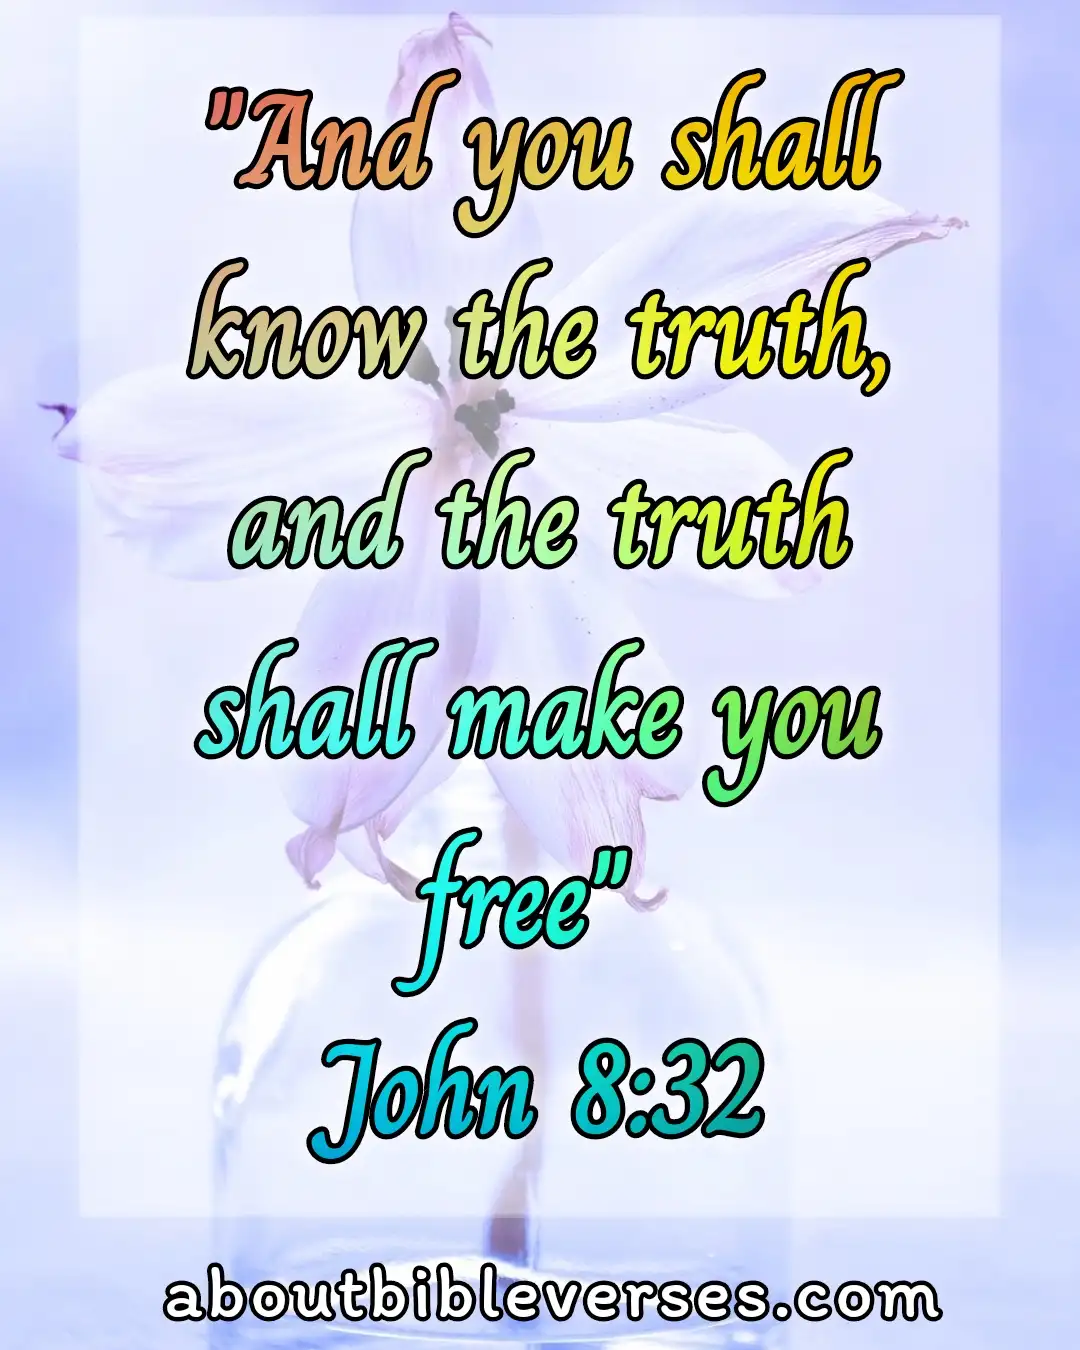 today bible verse (John 8:32)